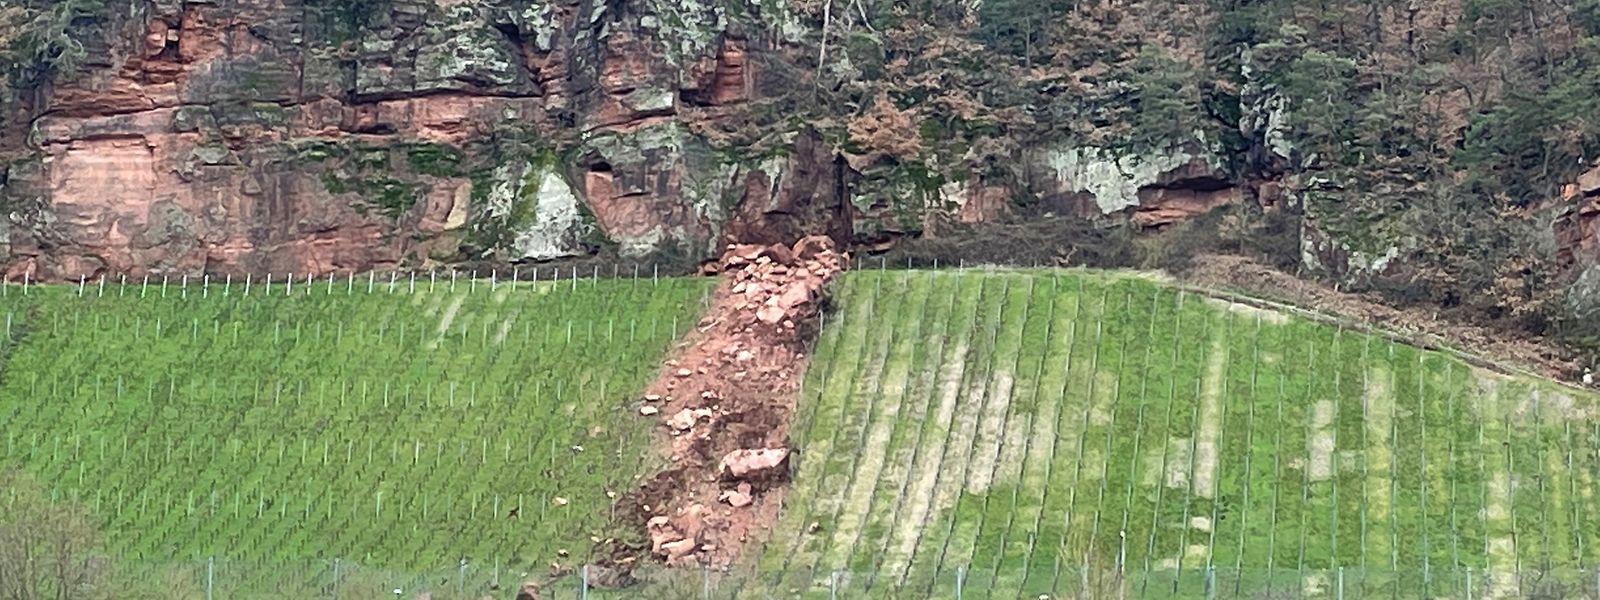 Am roten Felsen in Trier haben sich am Donnerstag mehrere größere Steinbrocken gelöst. Der Verkehr lief zunächst normal weiter.